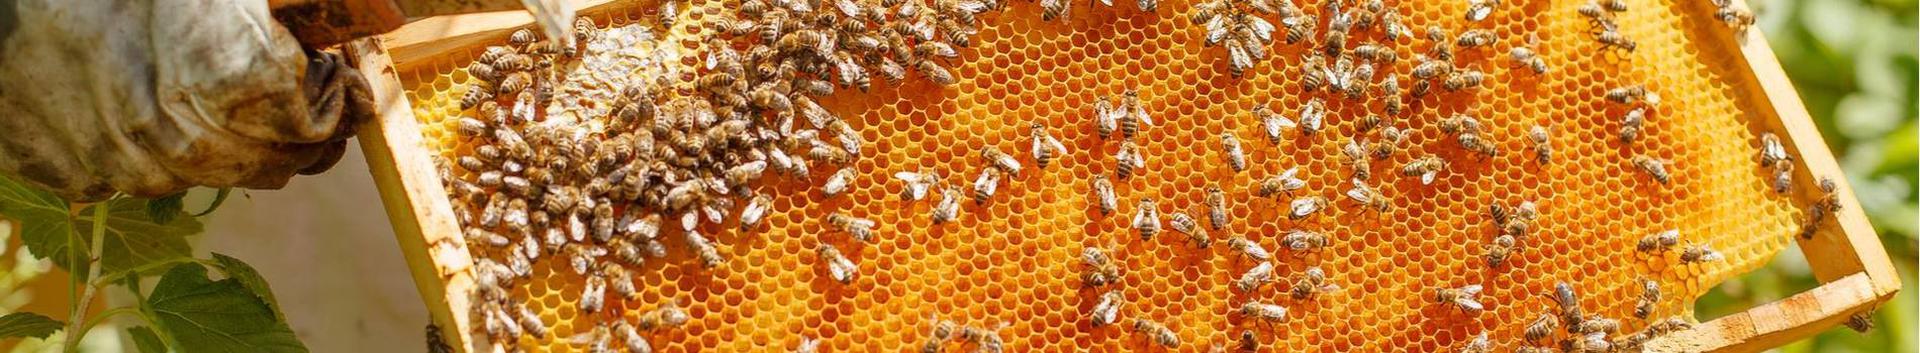 2010. aastast Põltsamaal tegutsev pereettevõte. Meie toodanguks on klassikaline mesi ja põnevad maitsemeed. Firma- ja personaalkingitused meilt!